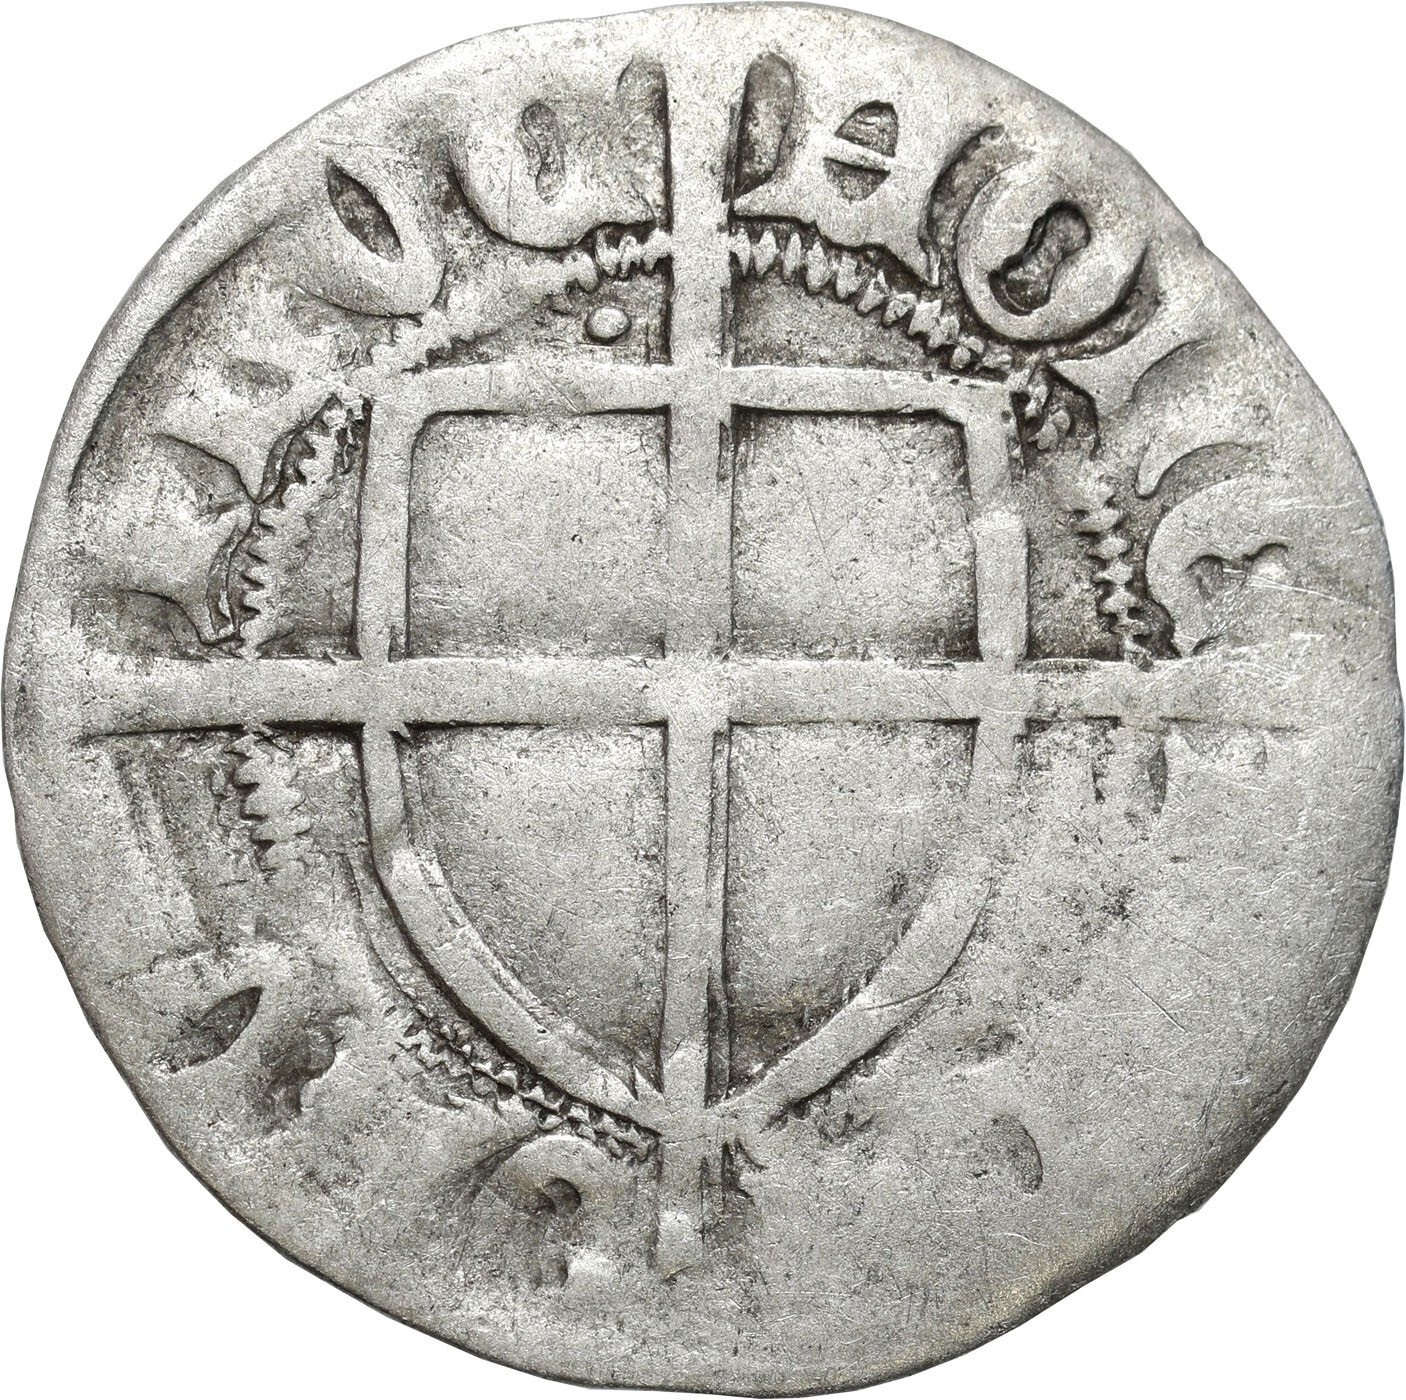 Zakon Krzyżacki. Paweł I Bellitzer von Russdorff (1422–1441). Szeląg